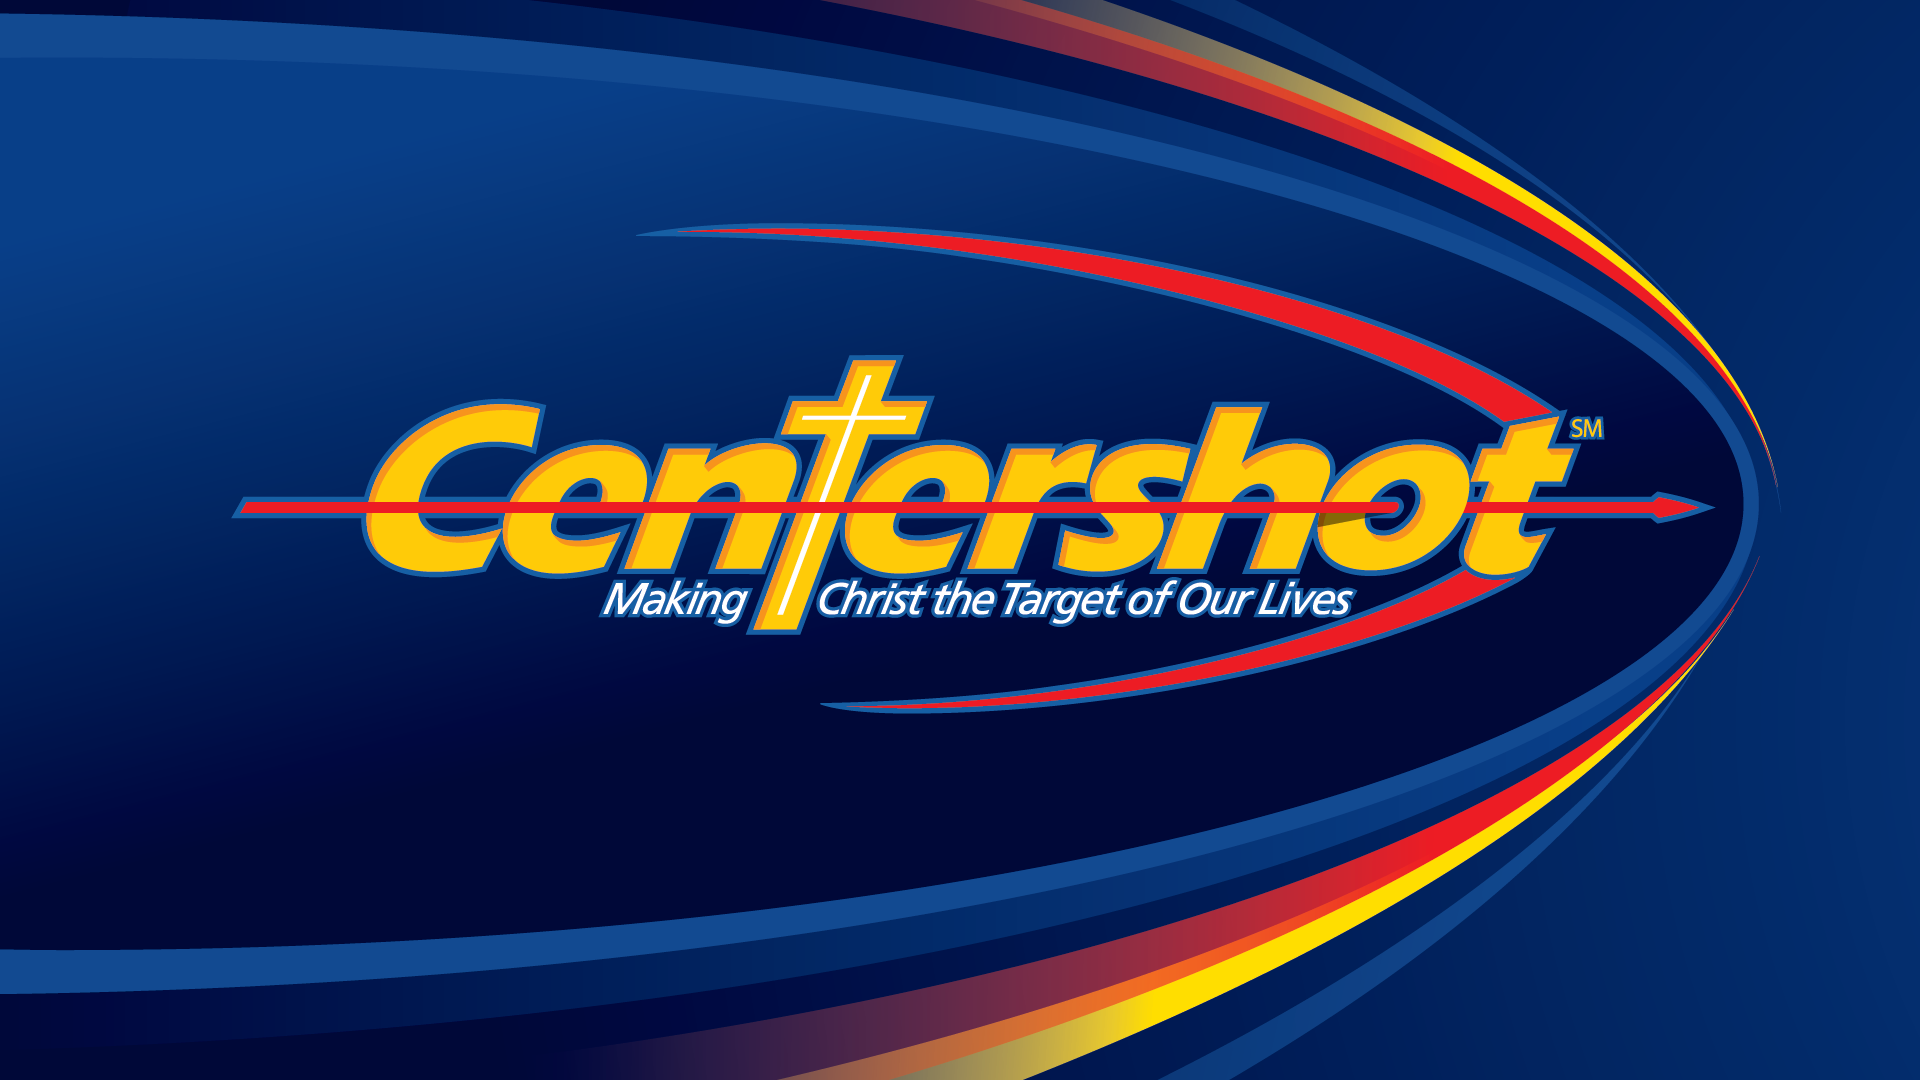 Centershot Life League